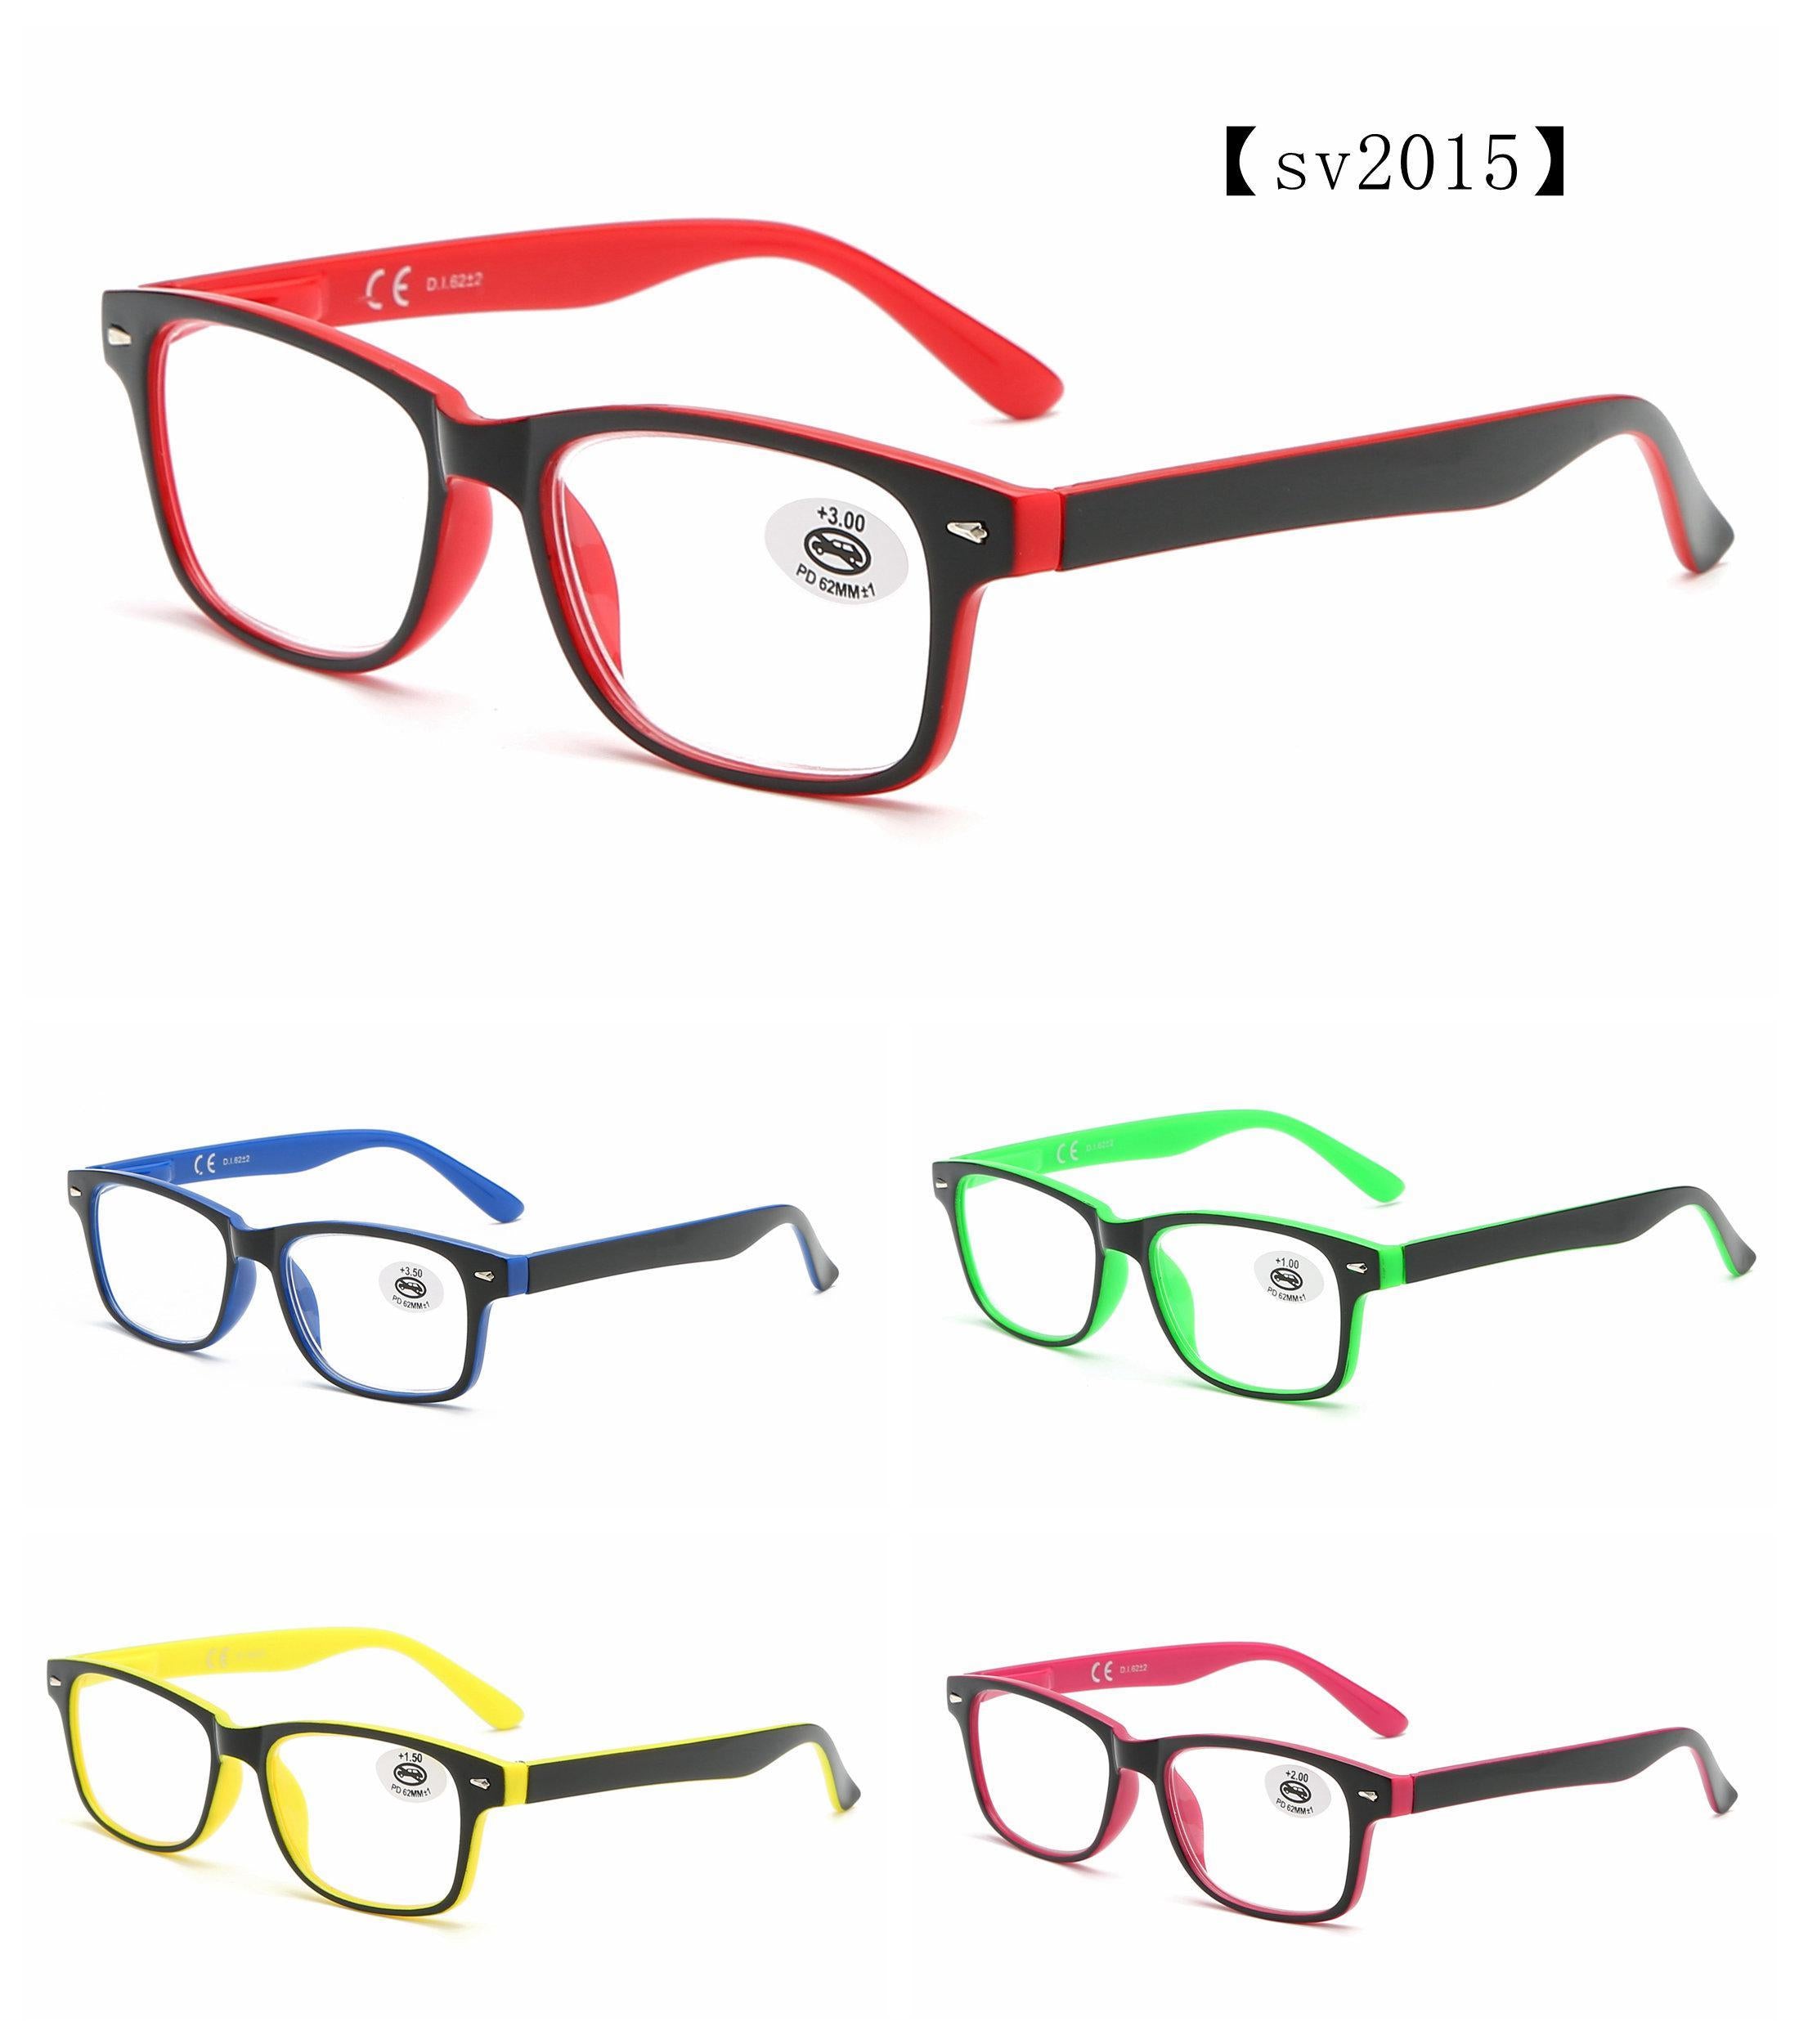 SV2015 Reading Glasses